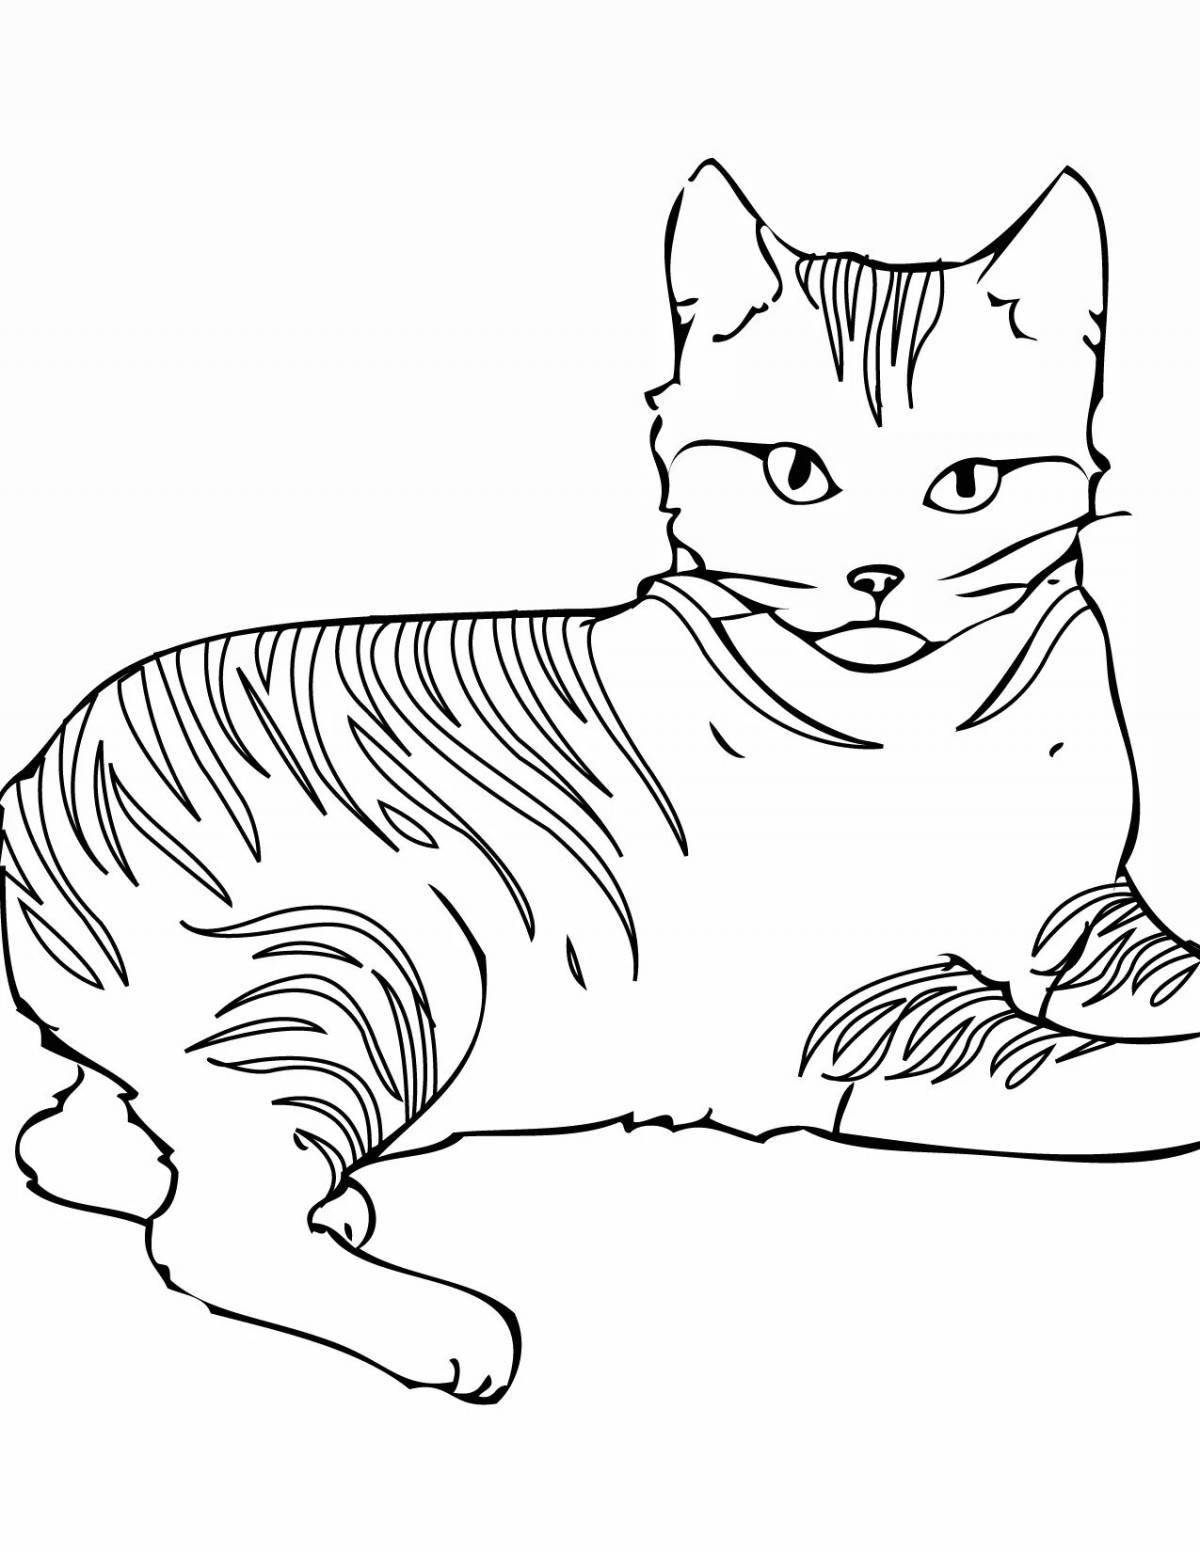 Творческая раскраска кошек